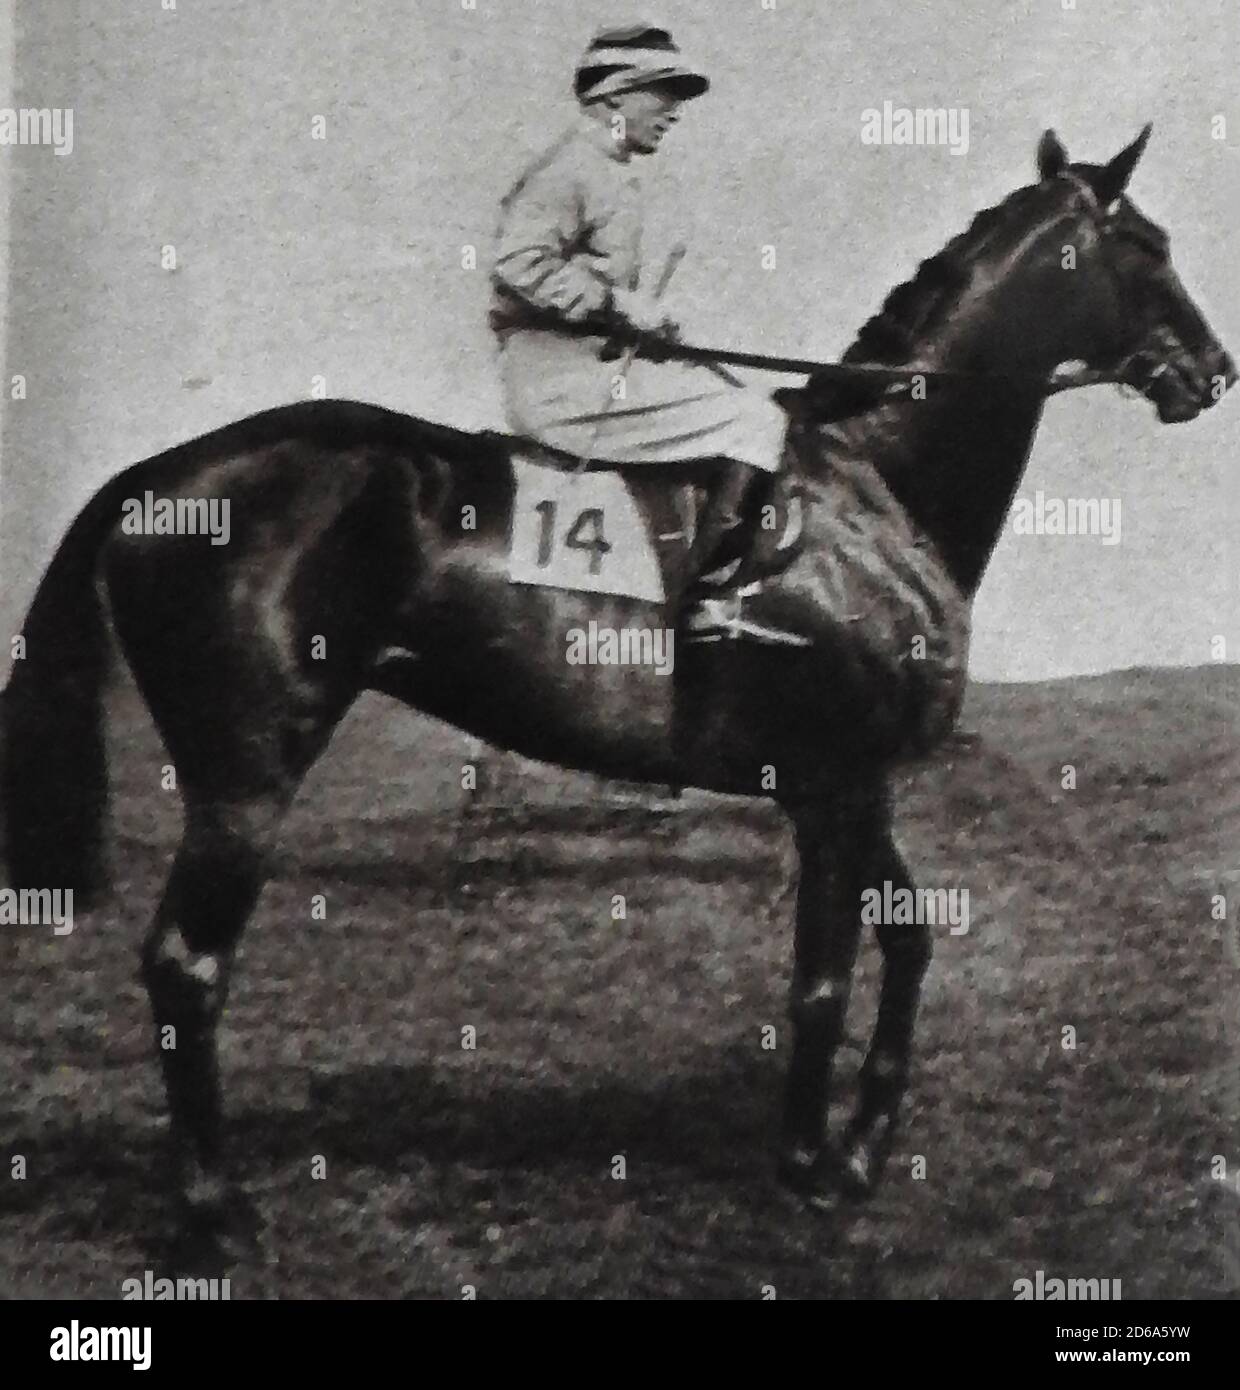 1925 GAGNANT DU DERBY ANGLAIS - Steve Donoghue à cheval le cheval gagnant MANNA, un cheval de course britannique pur-sang et son père qui a également gagné les 1925, 2000 guinéas à Newmarket. Manna était un cheval de baie élevé en Irlande par James J. Maher à son Confey Stud dans le comté de Kildare. Son propriétaire H Morriss (un courtier en lingots) a dit que le nom des chevaux lui a été donné parce qu'il était un cadeau envoyé par les Cieux! - Steve Donoghue (1884 – 1945) était un célèbre champion de course plate né dans le Lancashire. On dit qu'il a décidé de prendre la profession après avoir gagné un prix pour avoir porté un âne de cirque. Banque D'Images